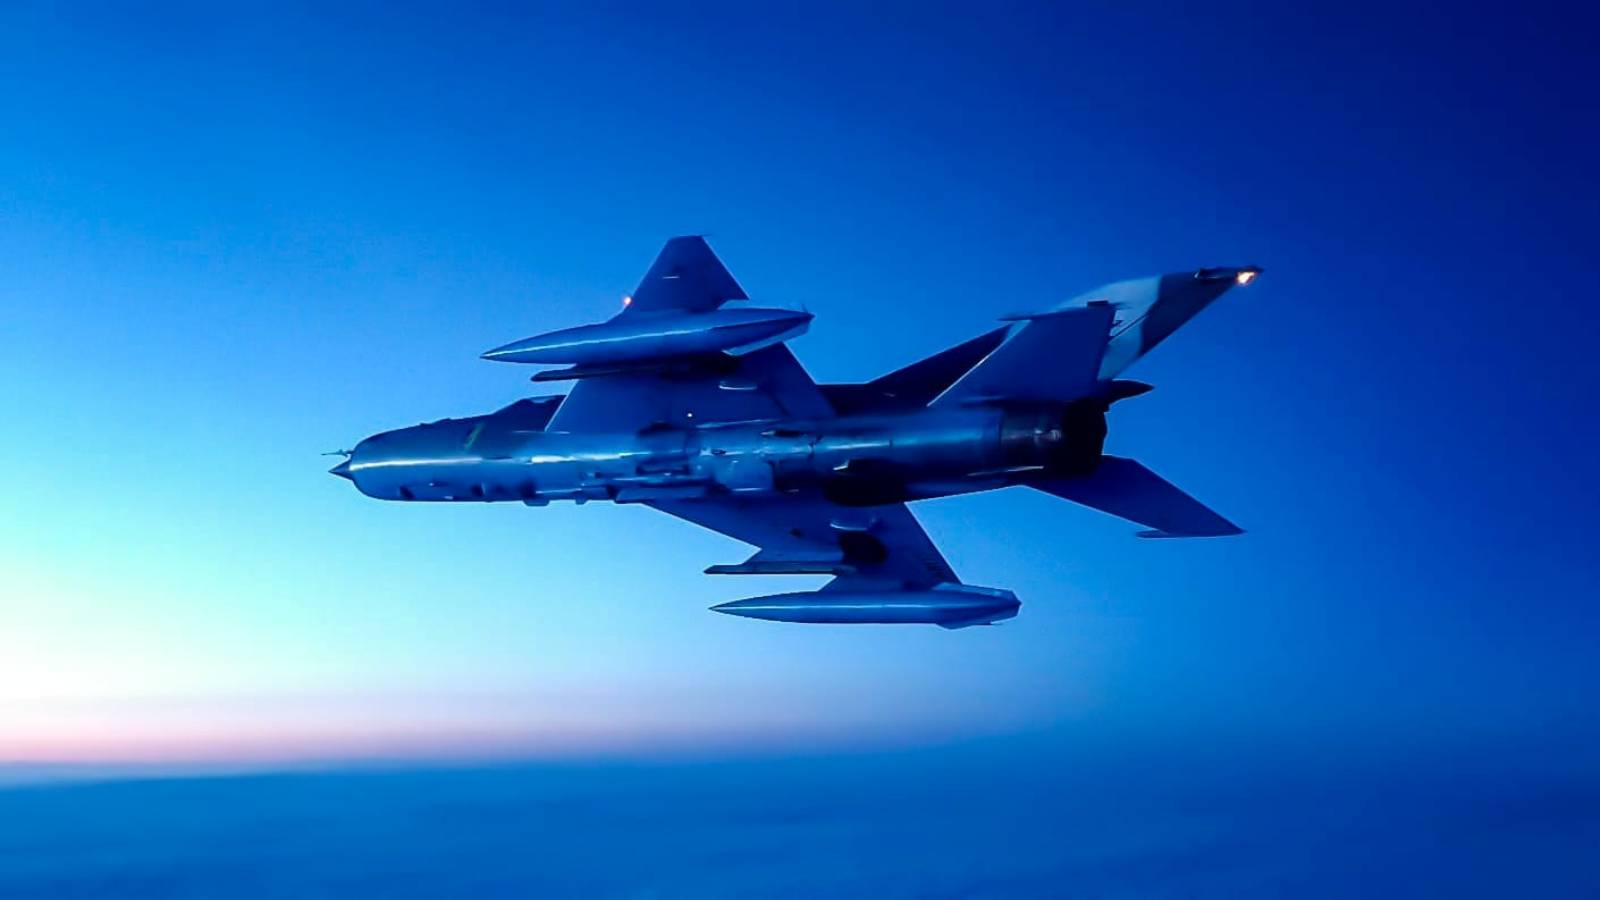 Samoloty MiG-21 LanceR jeszcze przez rok będą używane przez Siły Powietrzne Rumunii